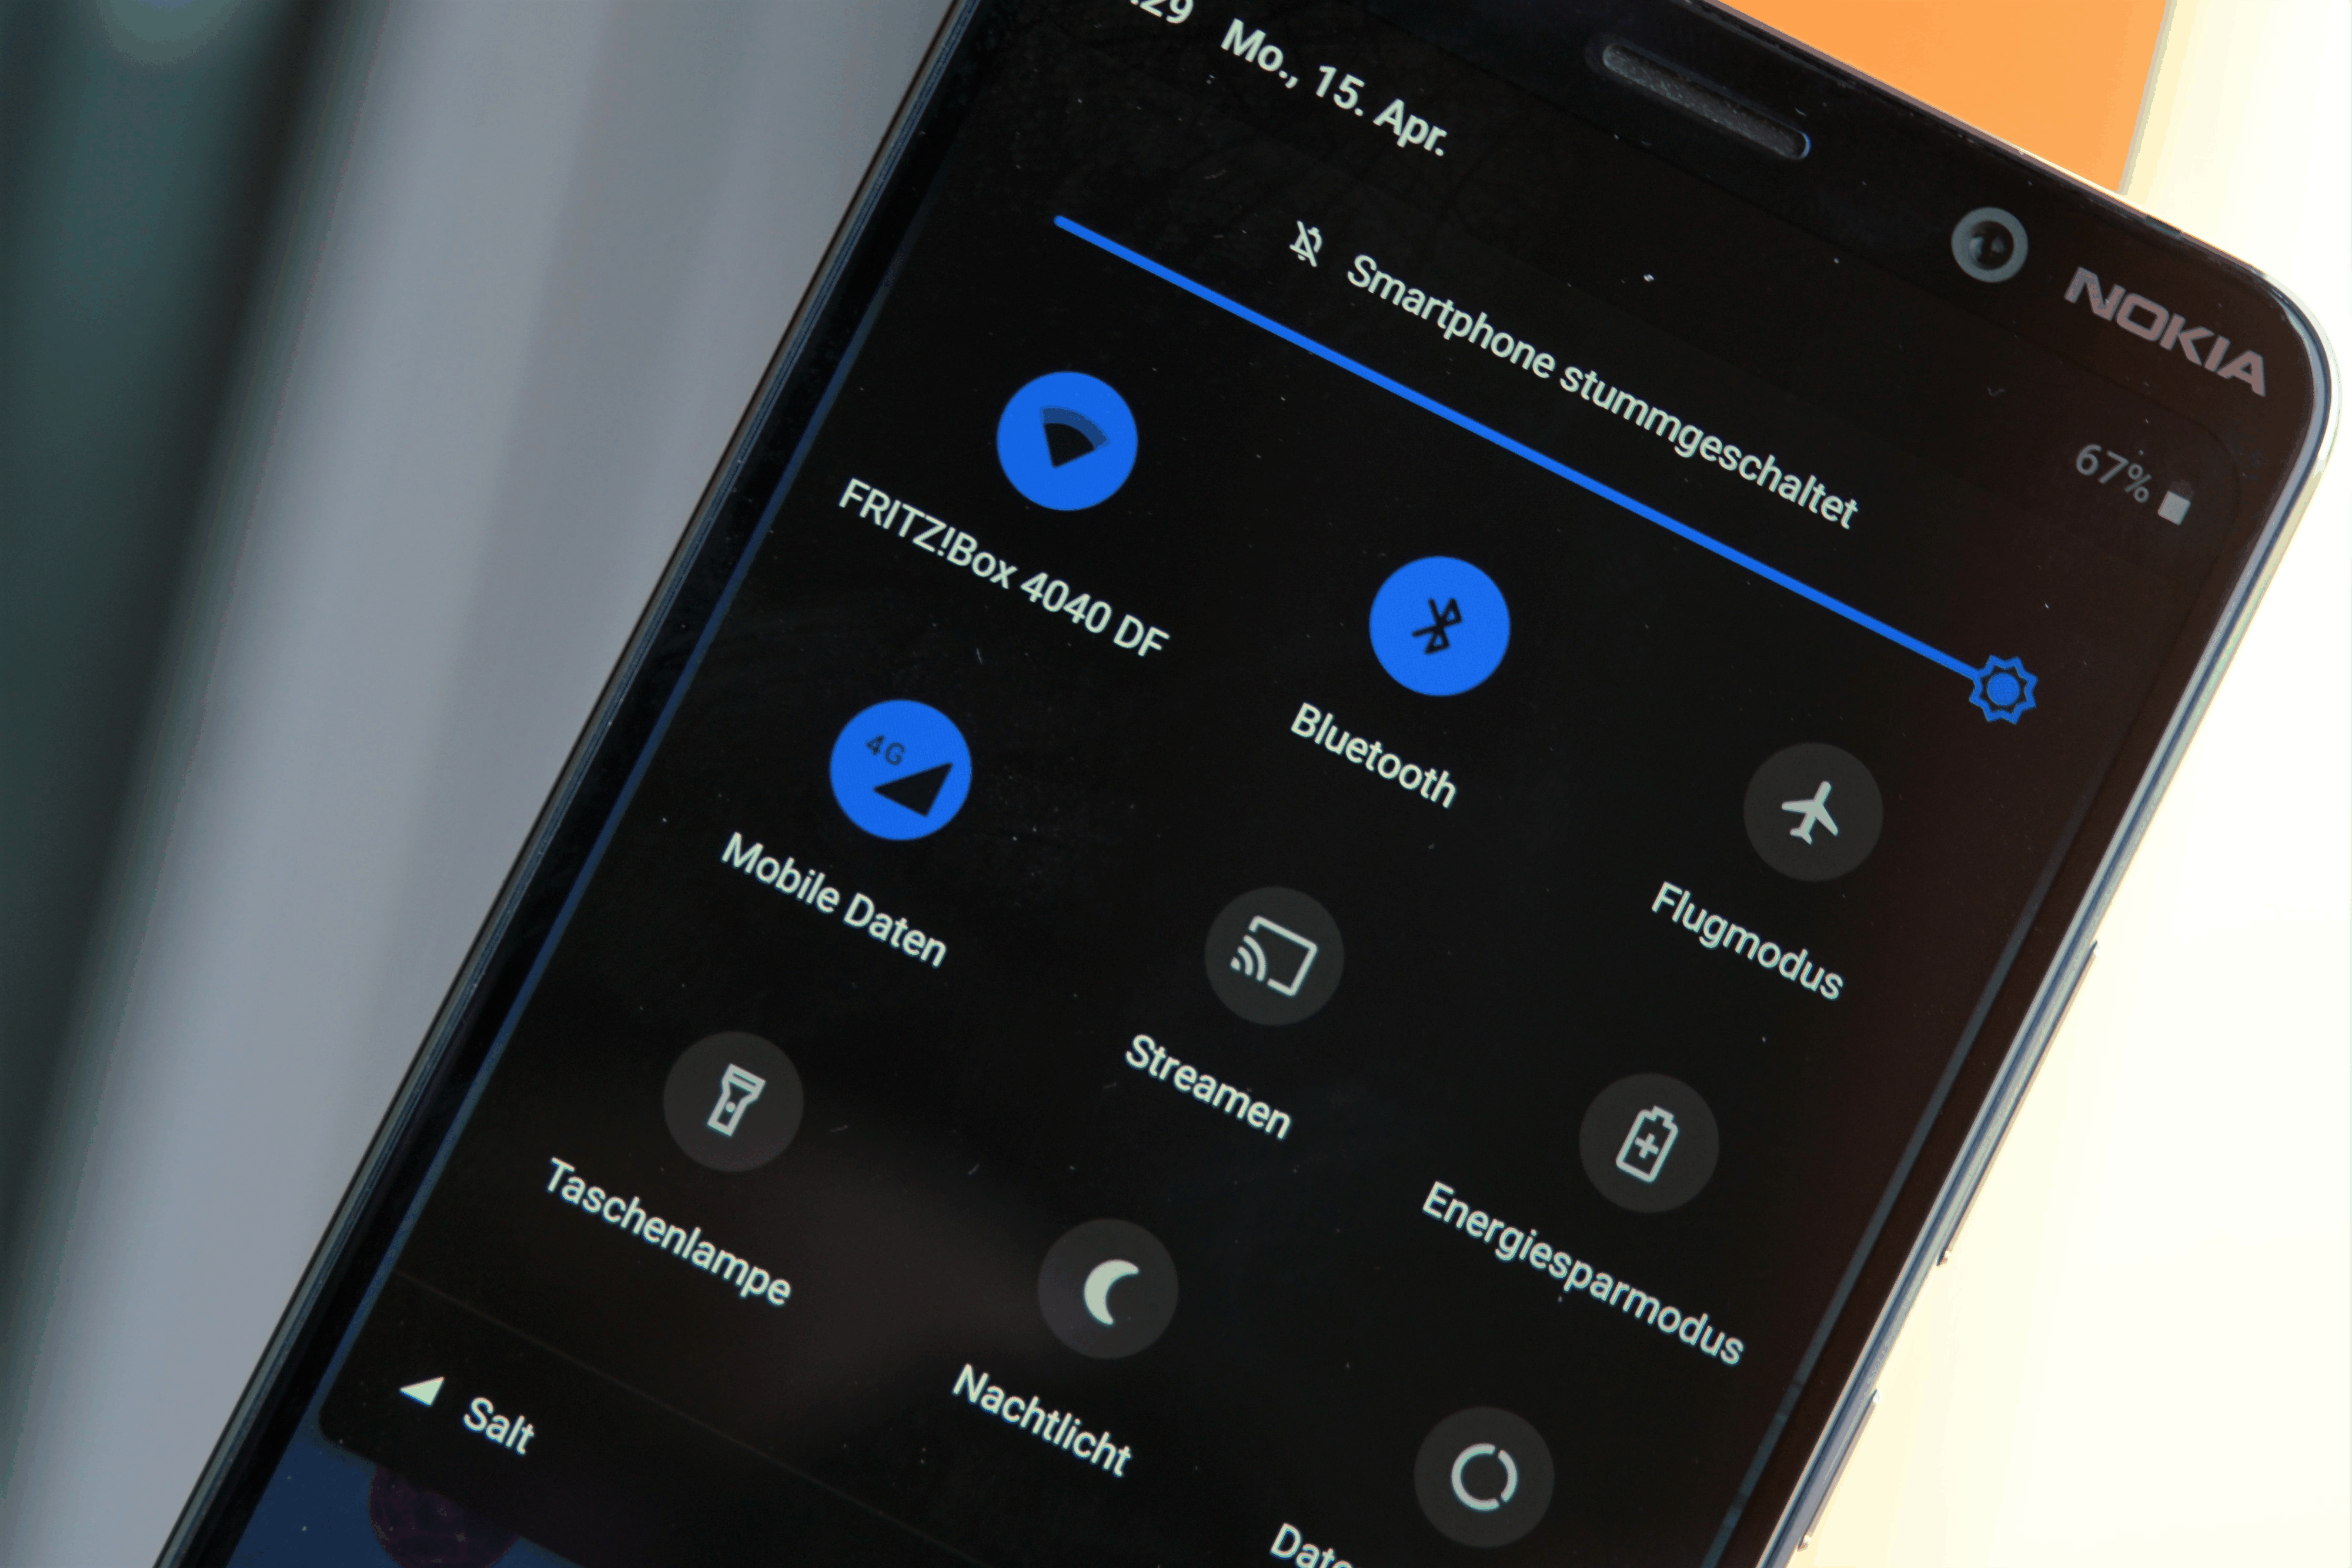 Das Nokia 9 mit Android 9 hat einen Dark Mode, allerdings erscheint das Betriebssystem (noch) nicht durchgängig in dunkler Optik.